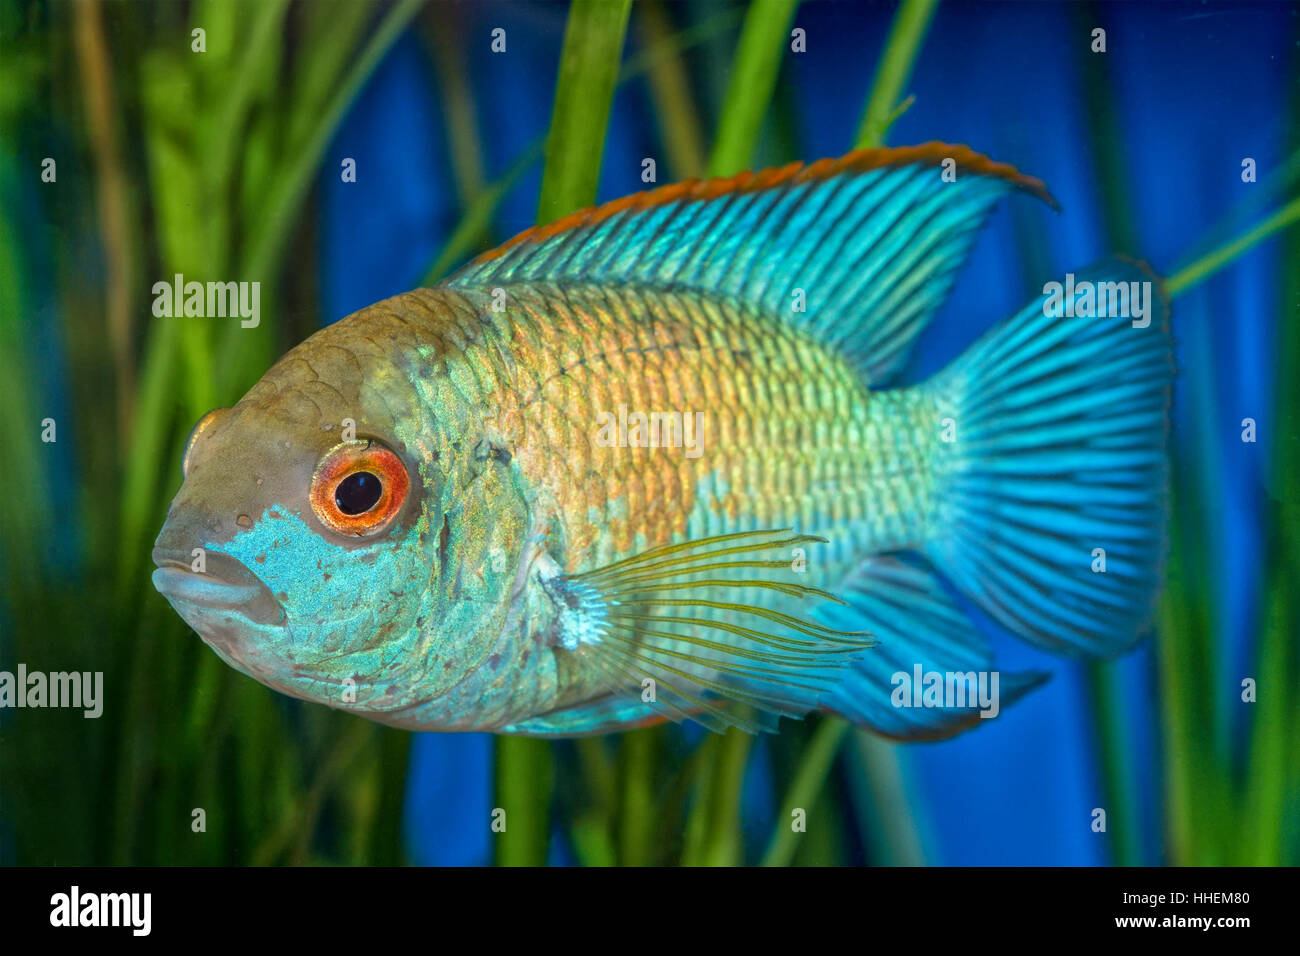 Portrait of cichlid fish (Andinoacara sp.) in aquarium Stock Photo